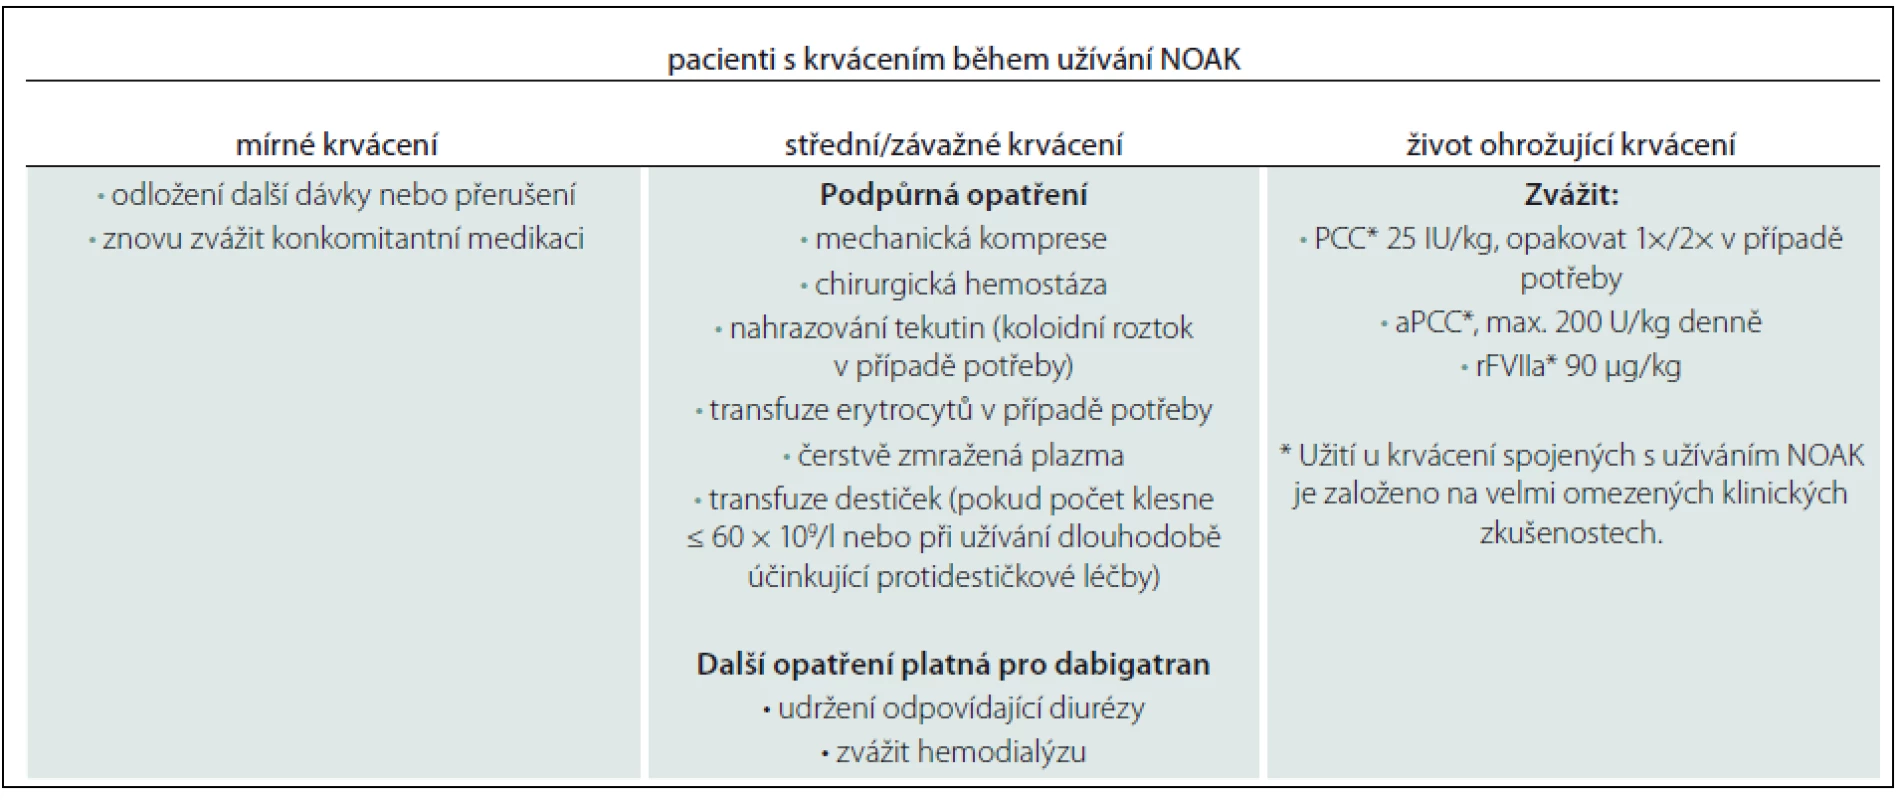 Algoritmus managementu pacientů léčených NOAK při krvácivých příhodách.